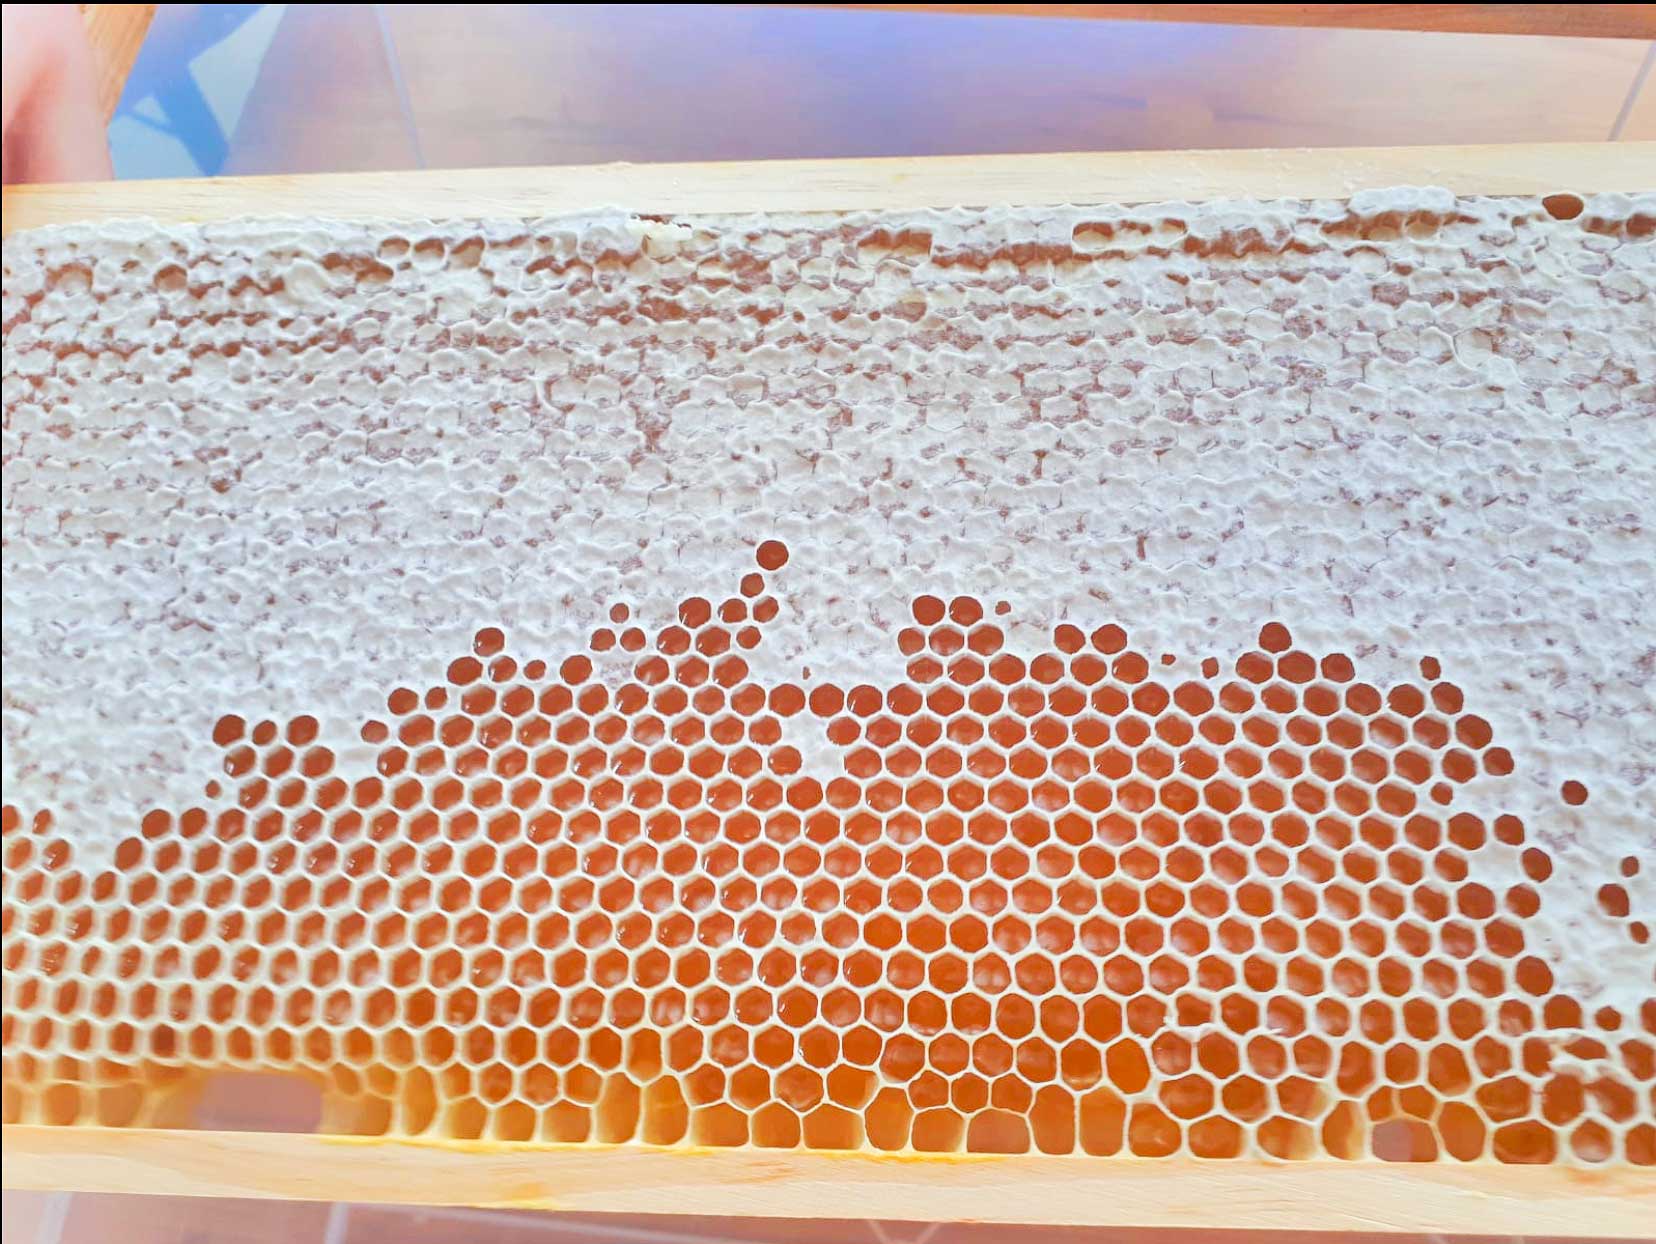 Die Bienen AG in Aktion beim Honigschleudern